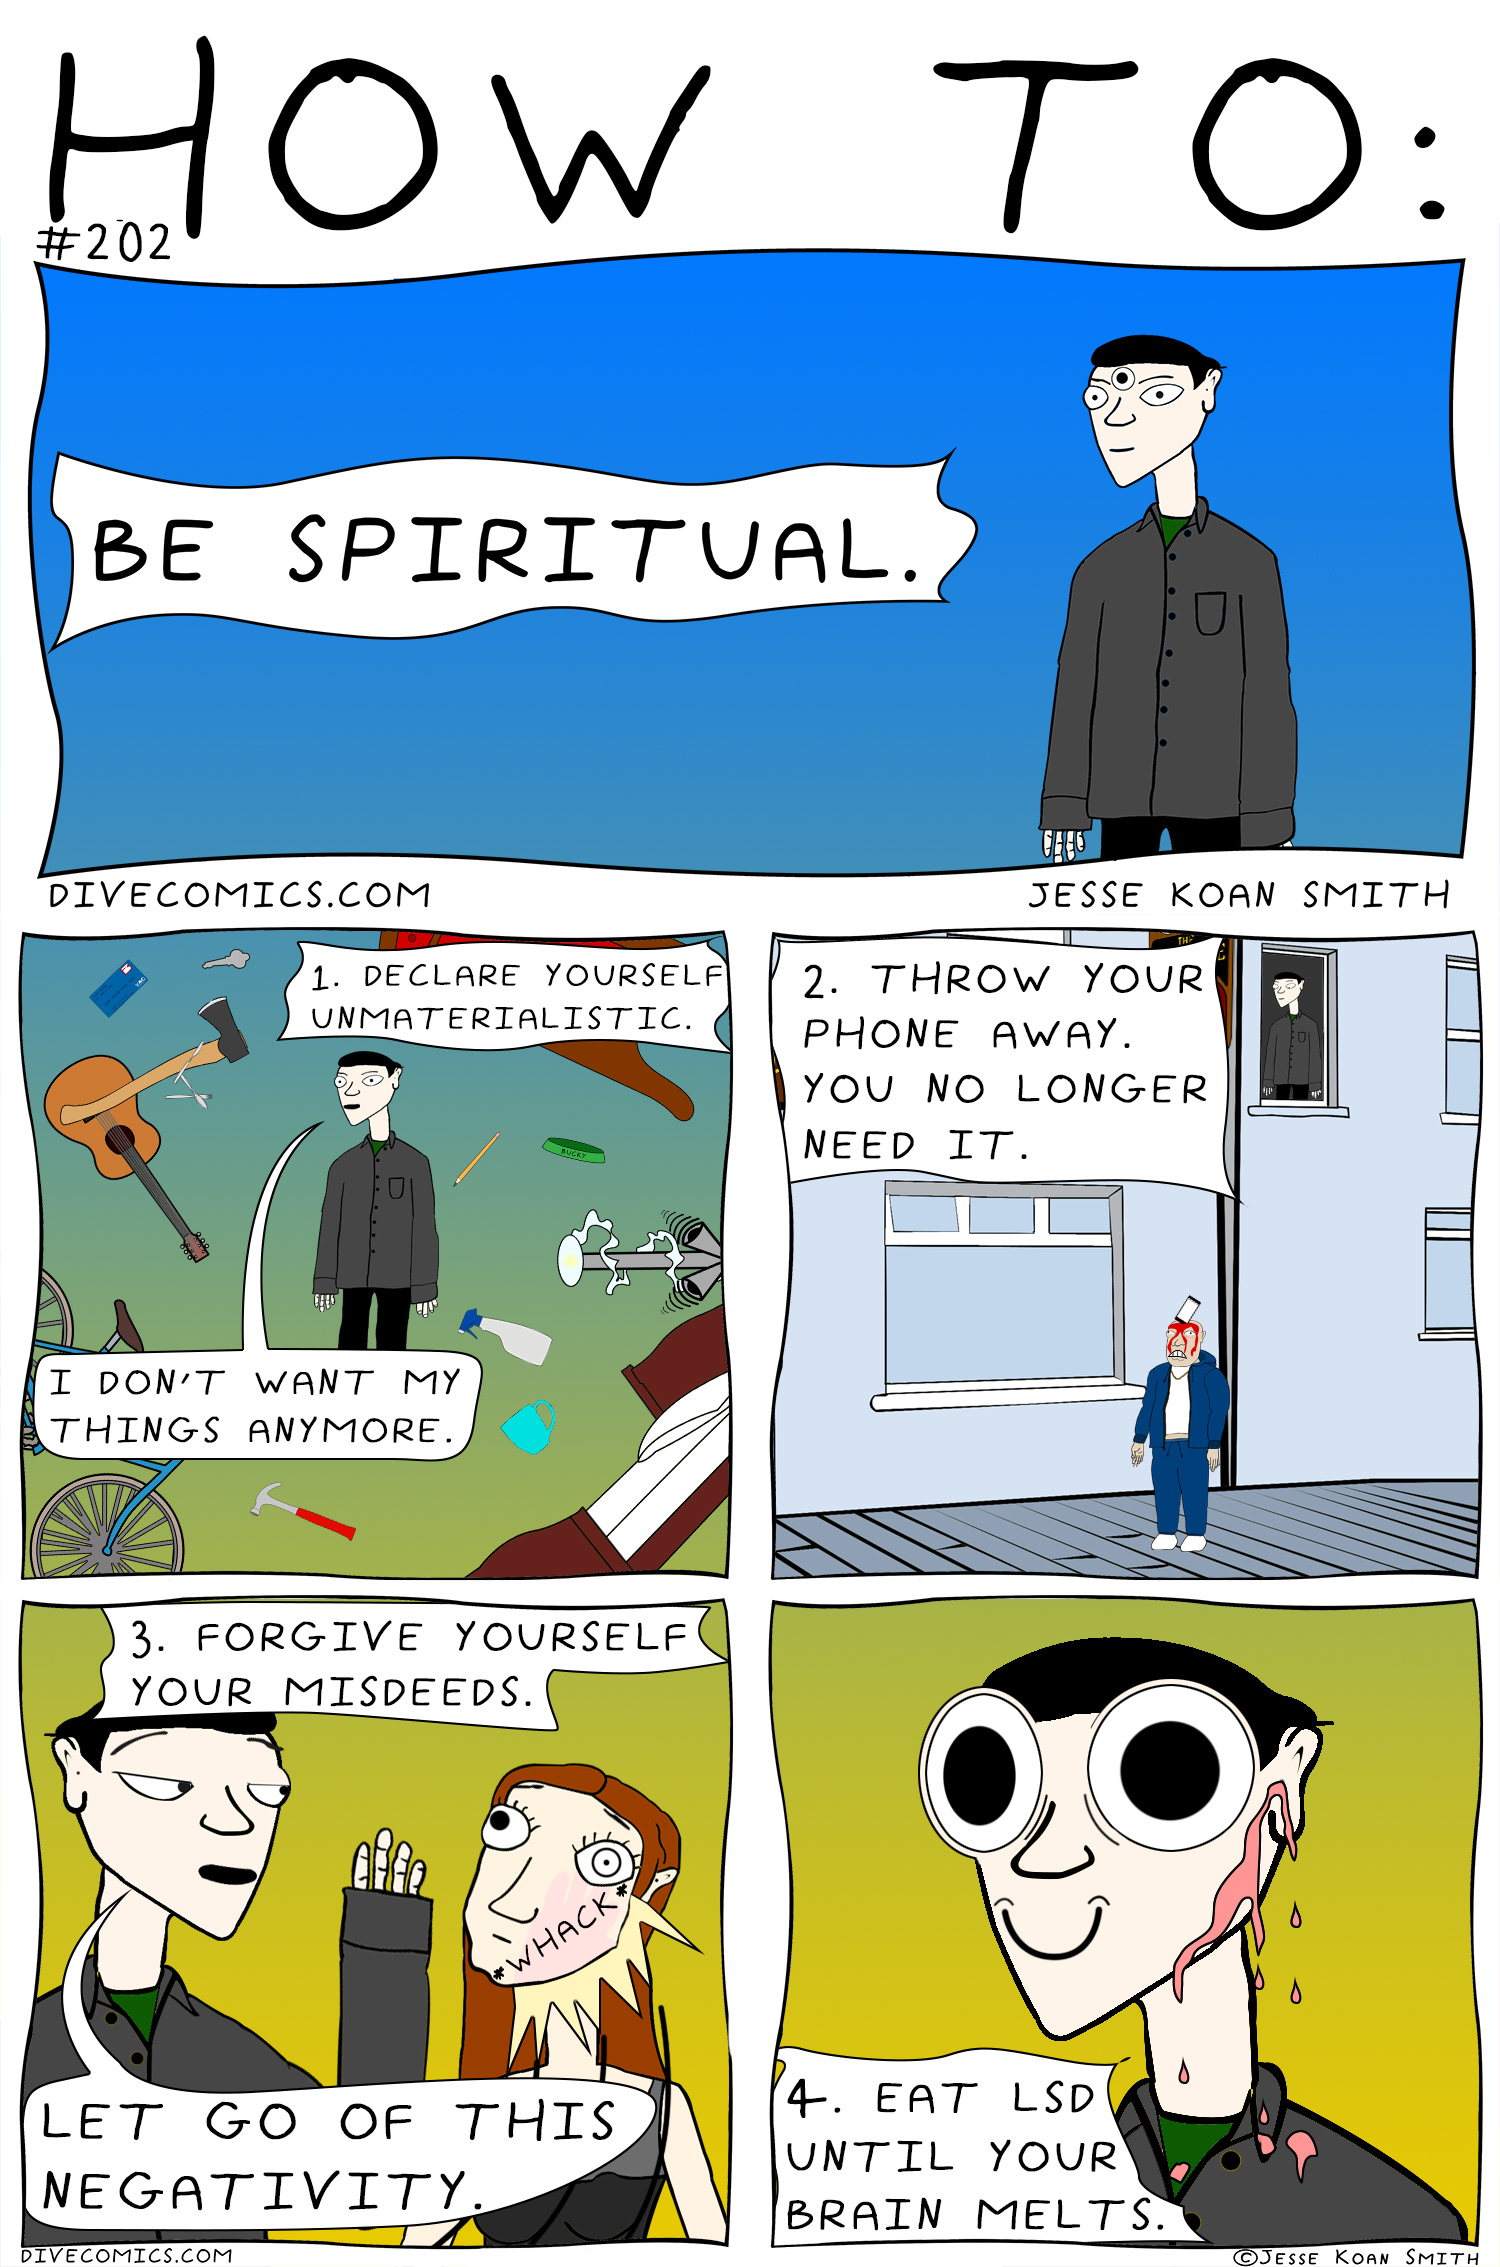 BEING SPIRITUAL\